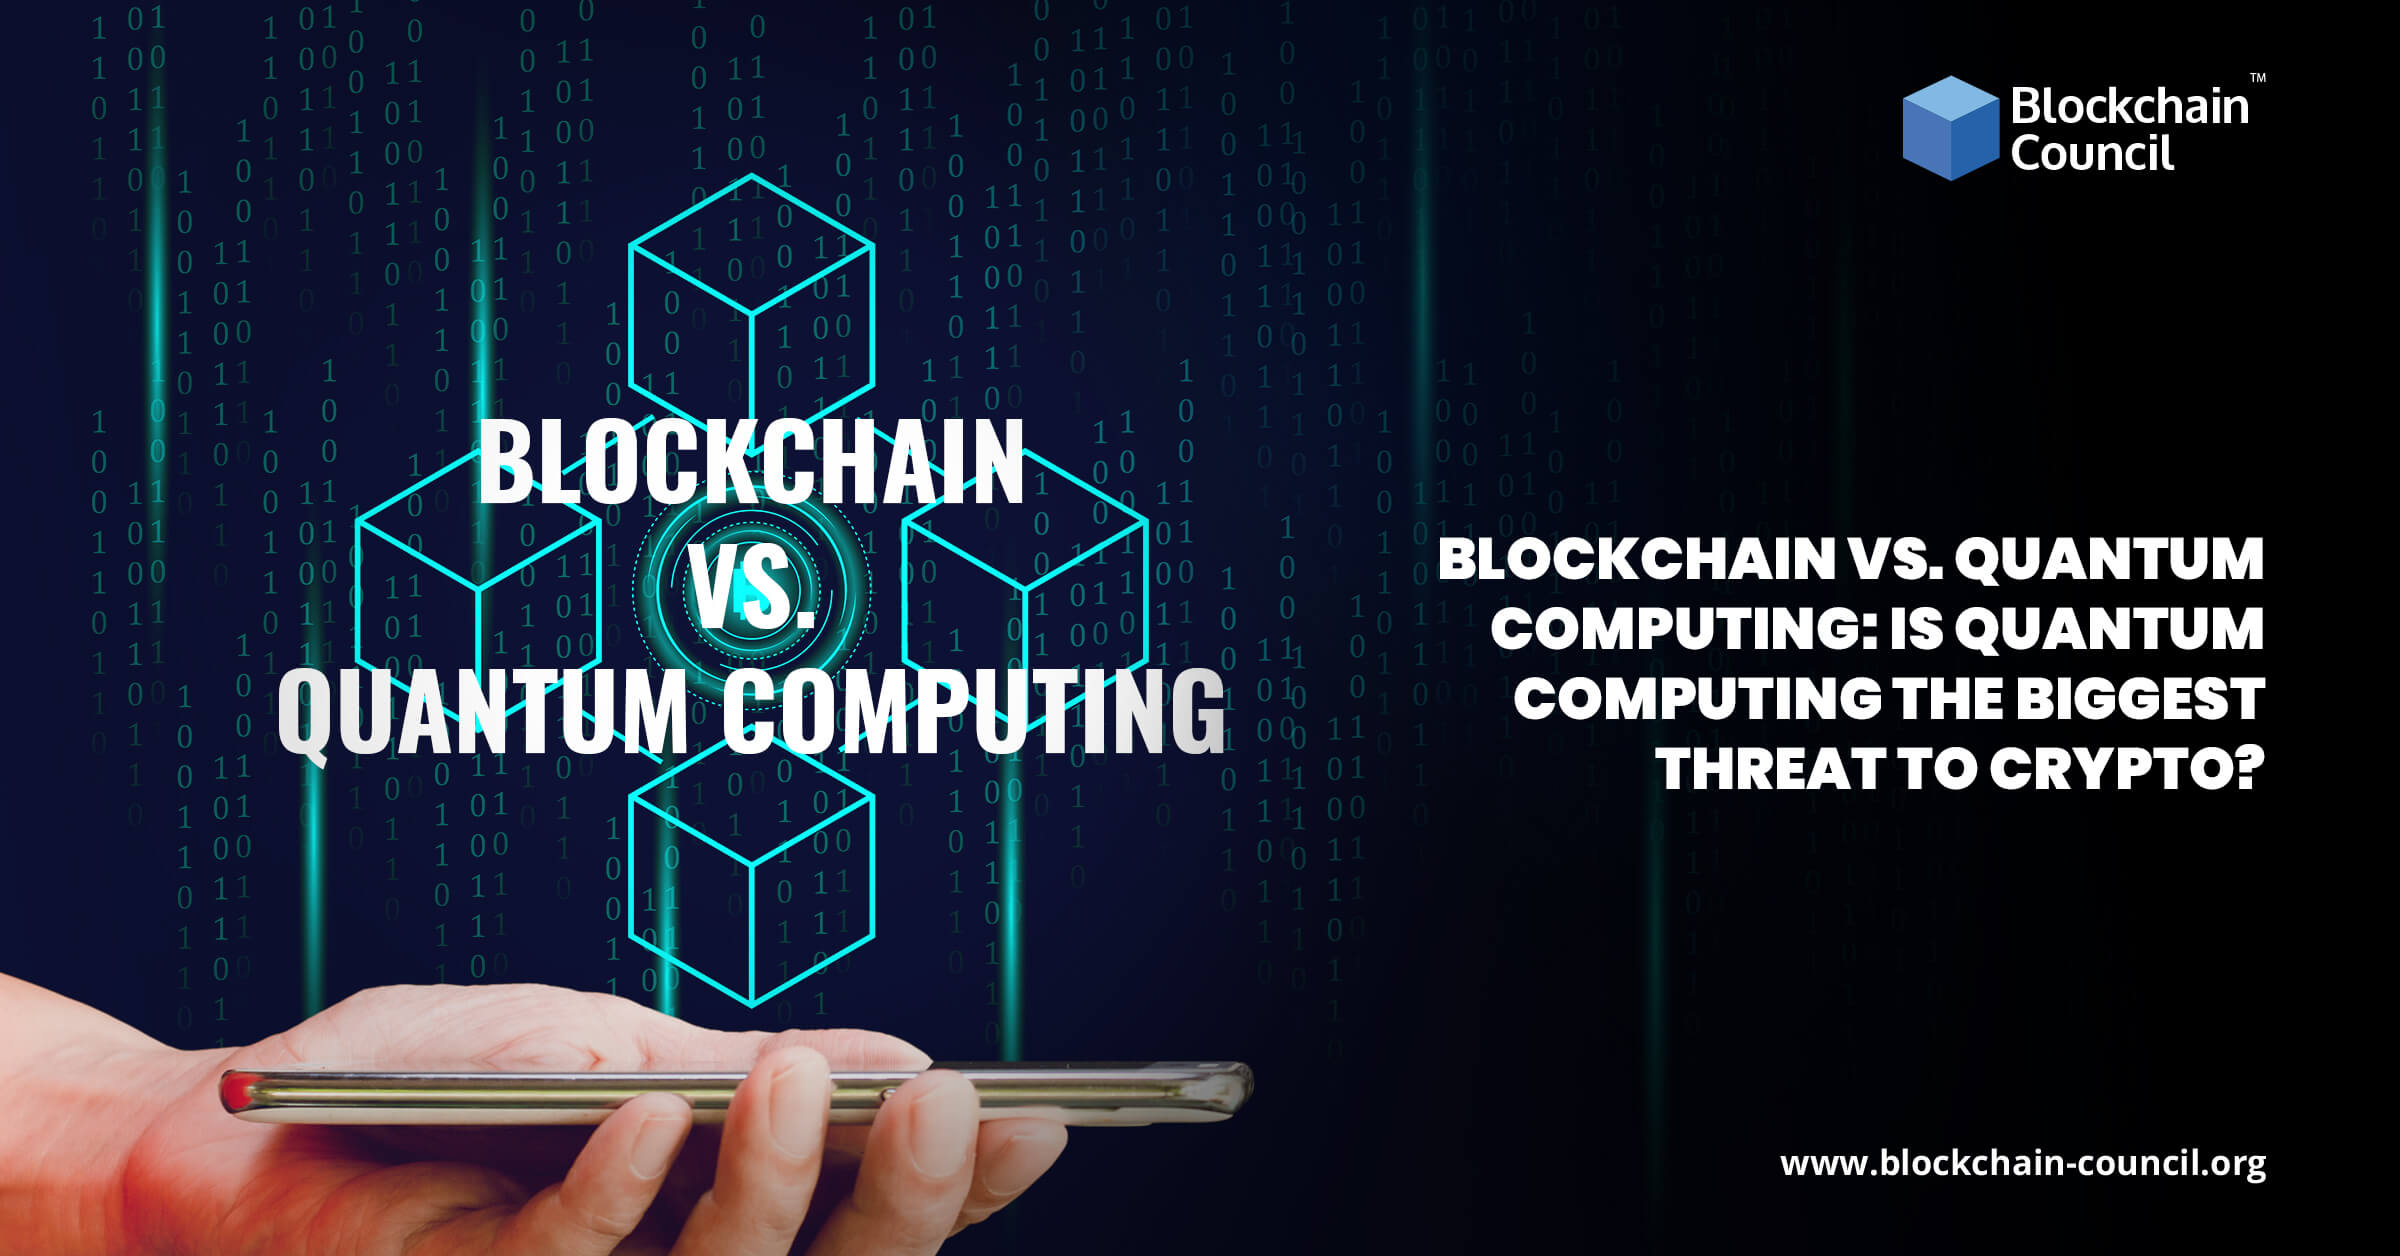 Blockchain Vs. Quantum Computing: Is Quantum Computing the Biggest Threat to Crypto?